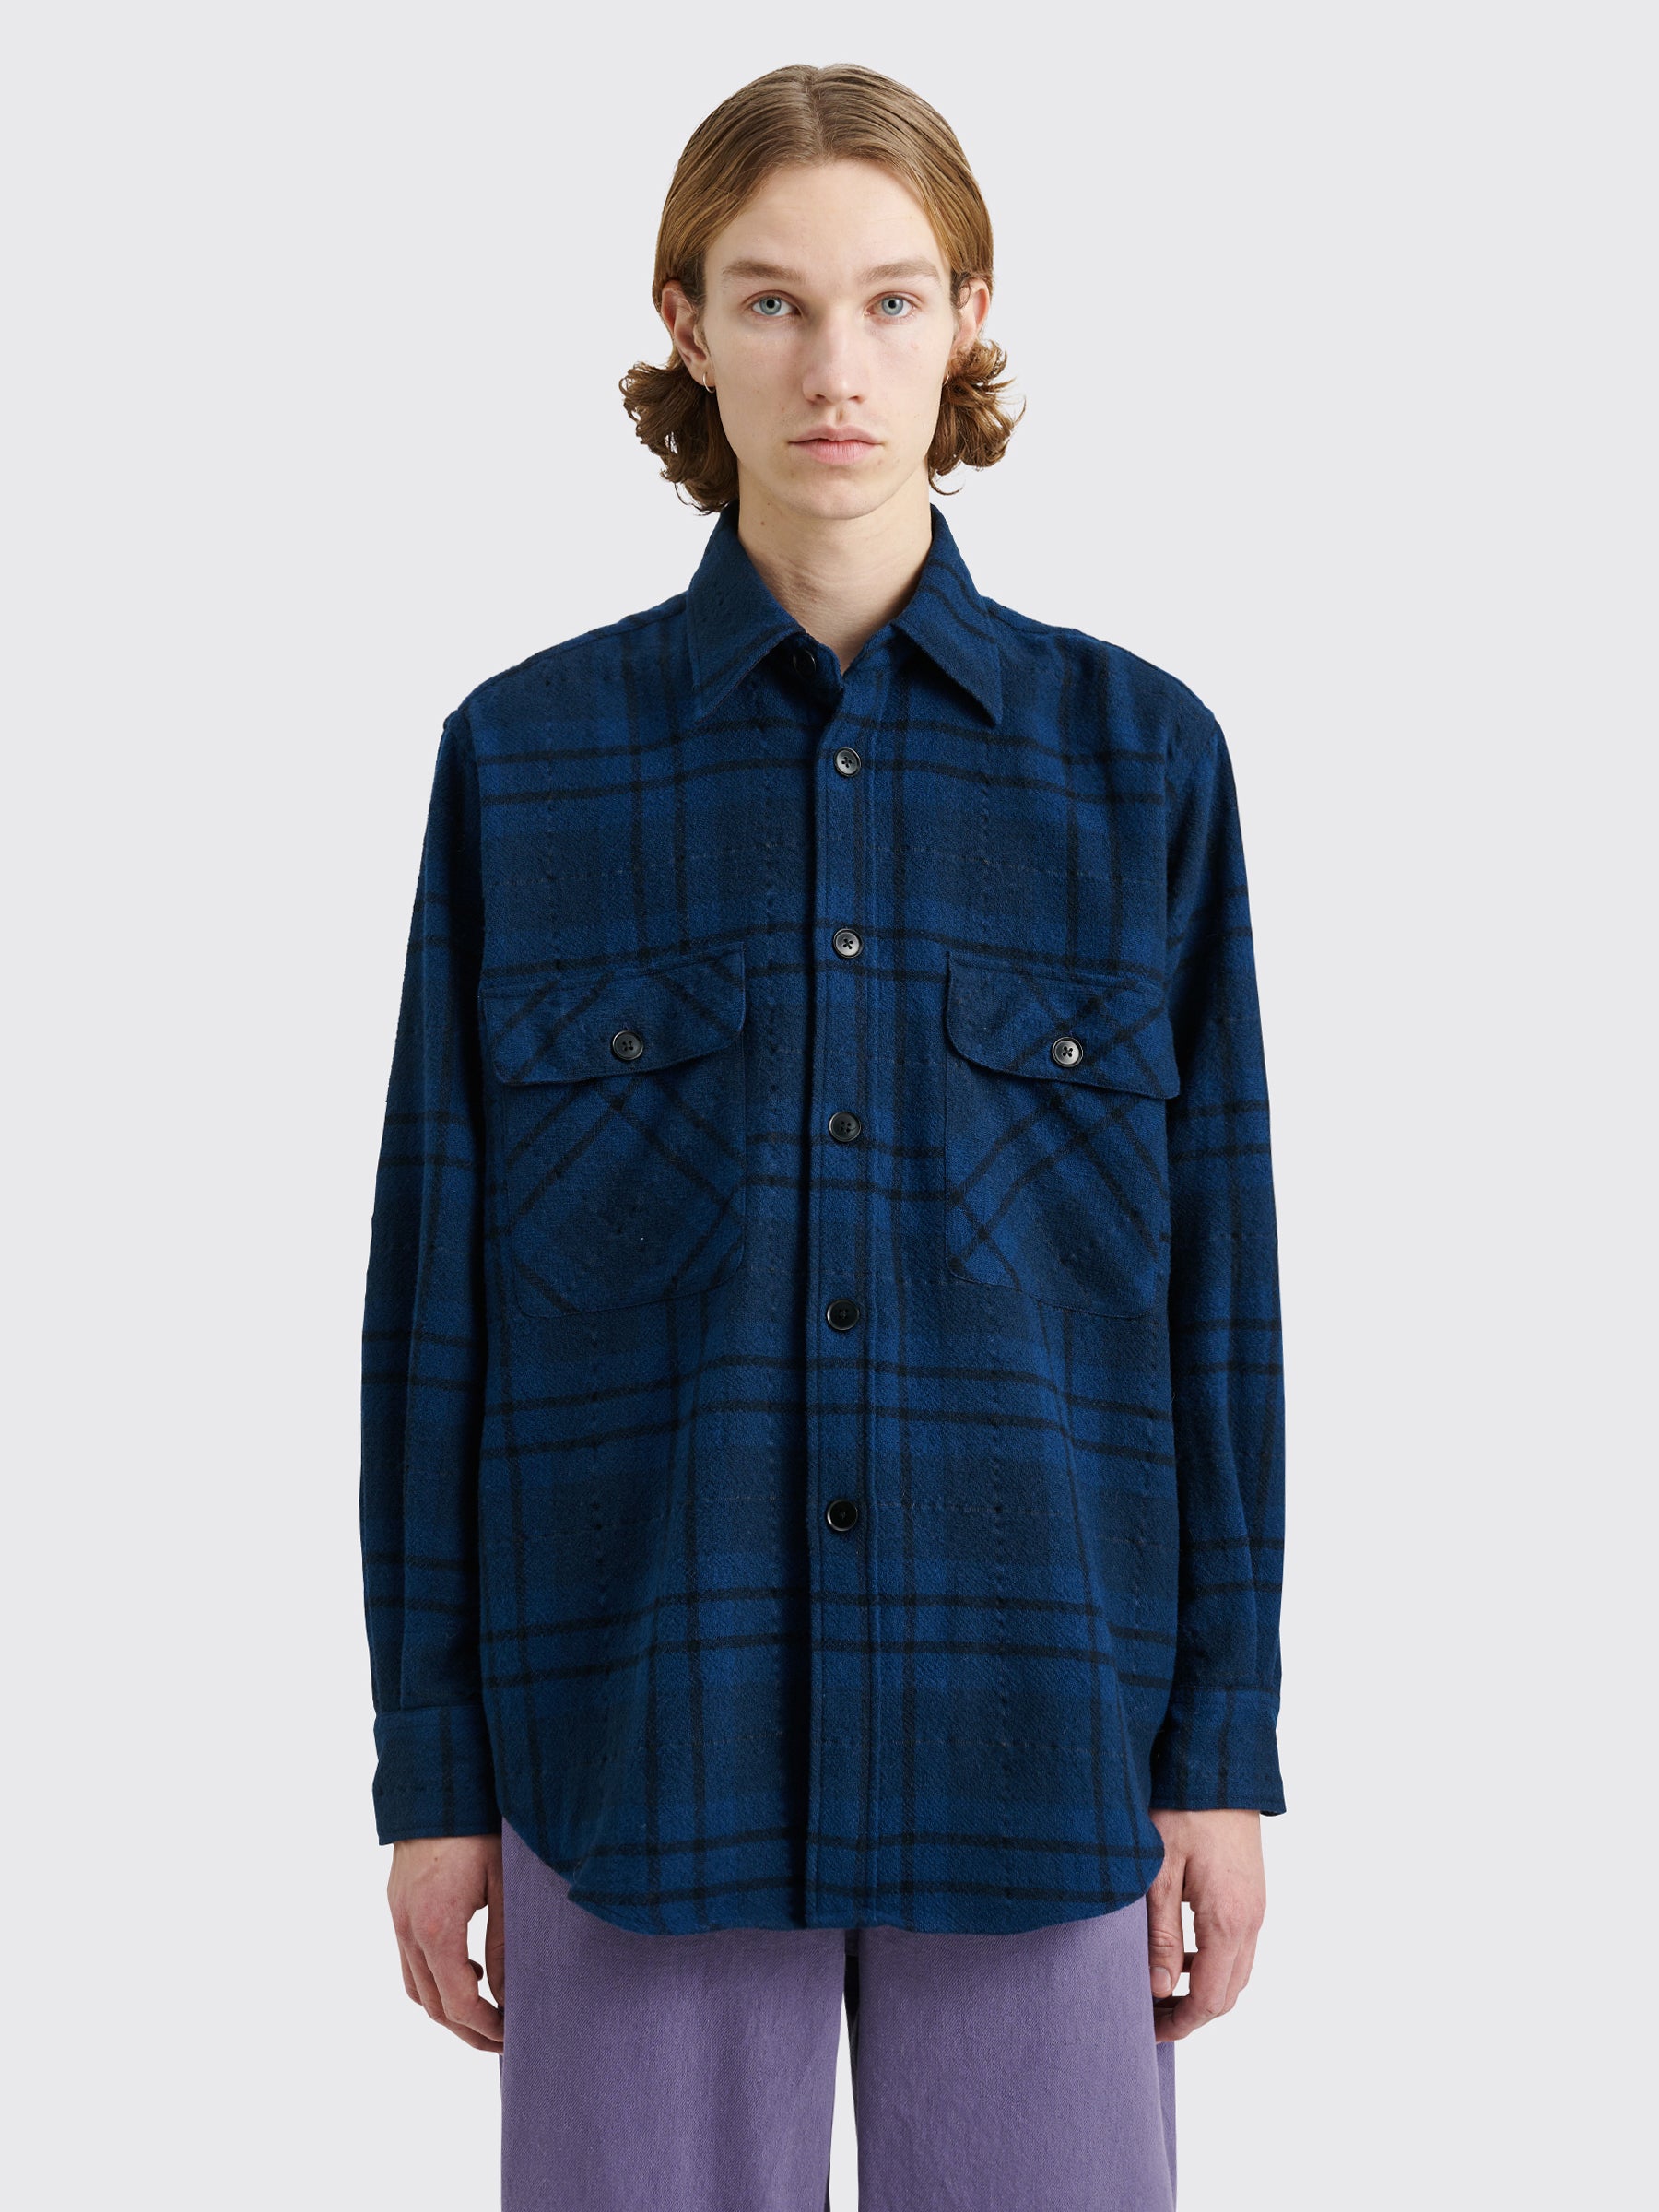 TRÈS BIEN everywear Oversized Classic Shirt Wool Blue Flannel